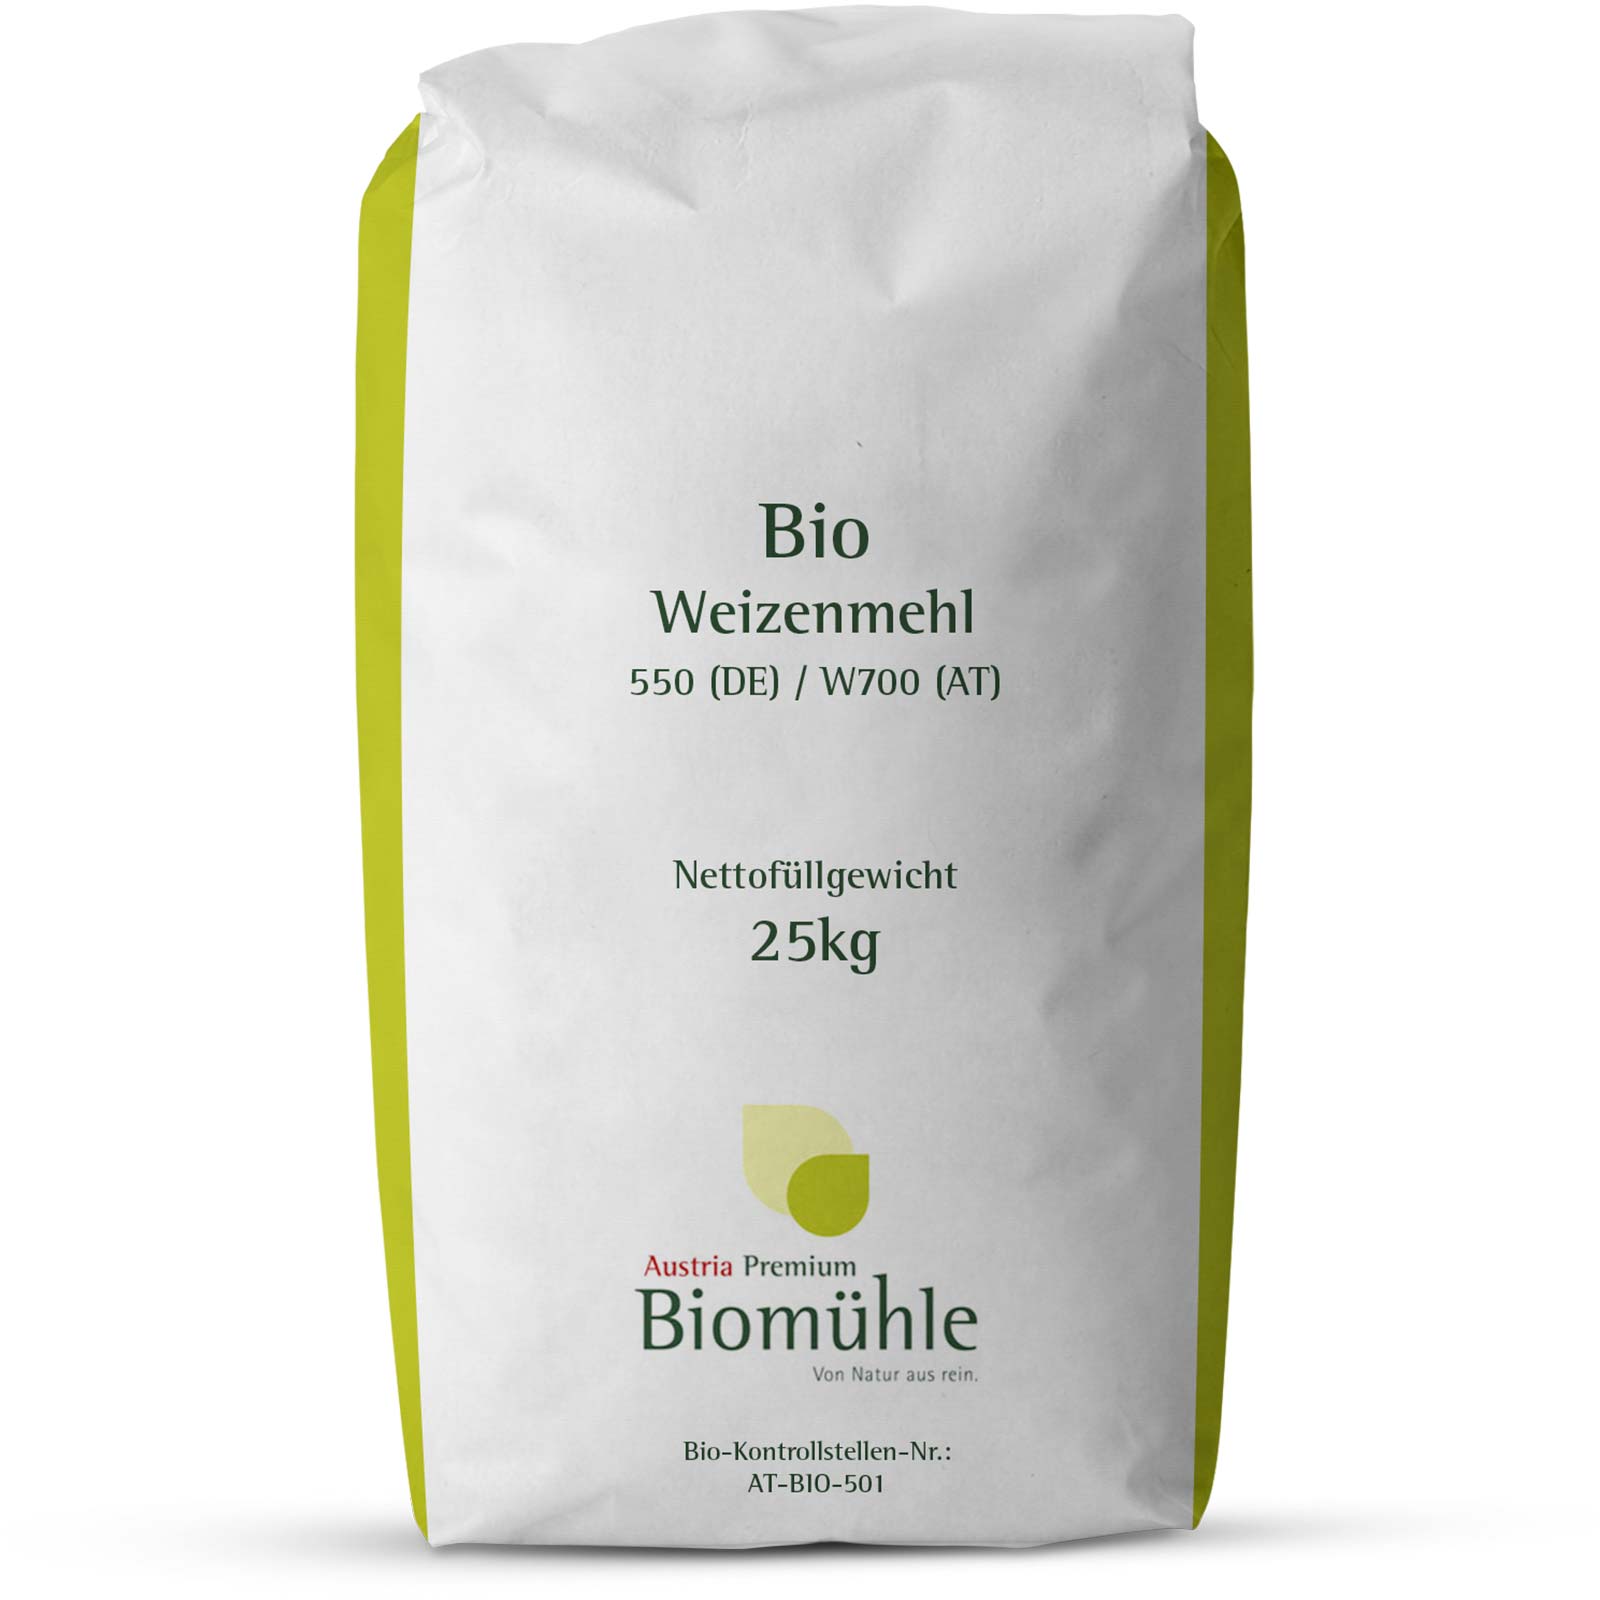 Bio Weizenmehl Type 550 / W700 25 kg